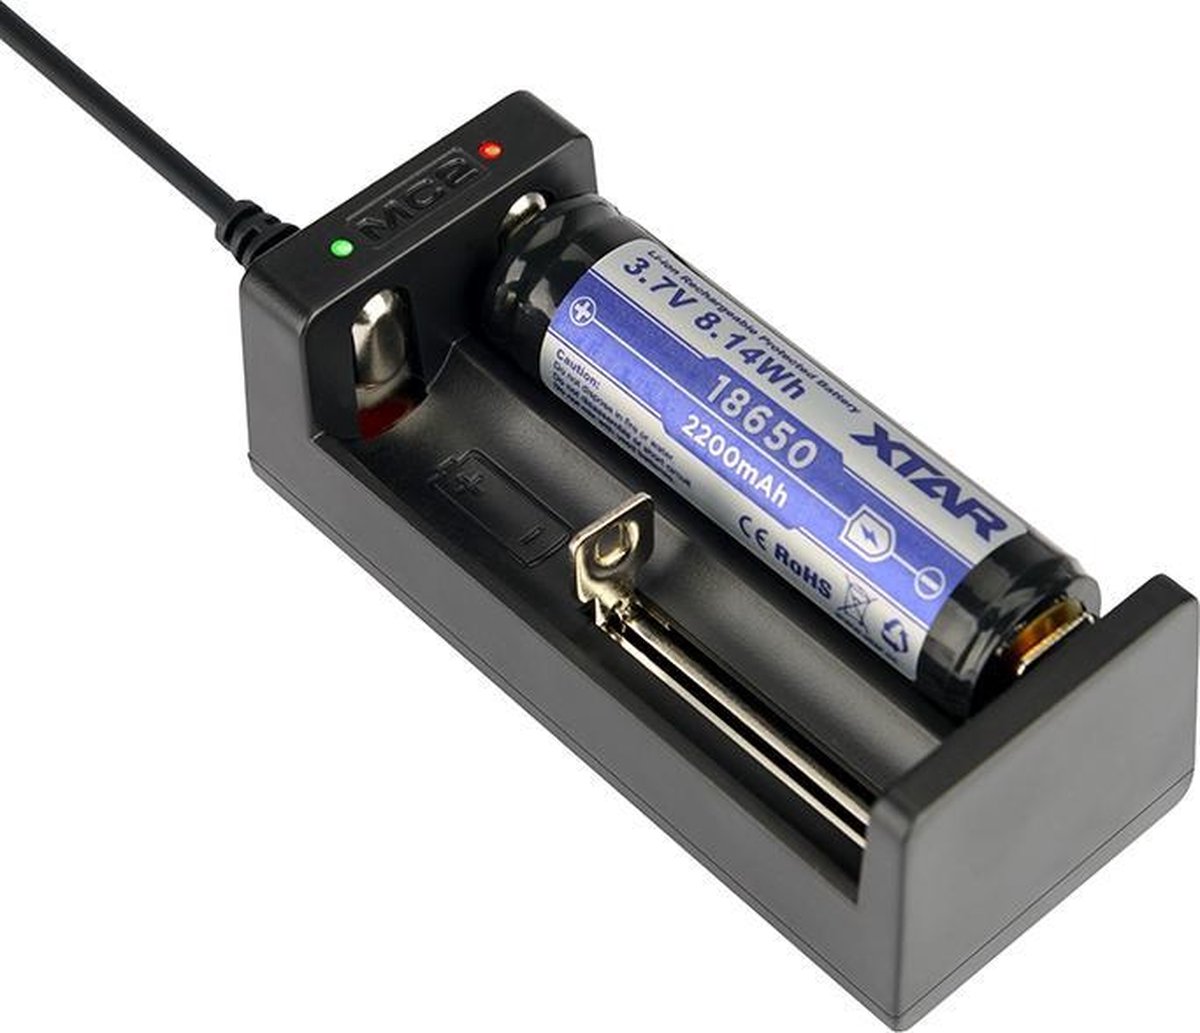 XTAR MC2 USB li-ion batterijlader